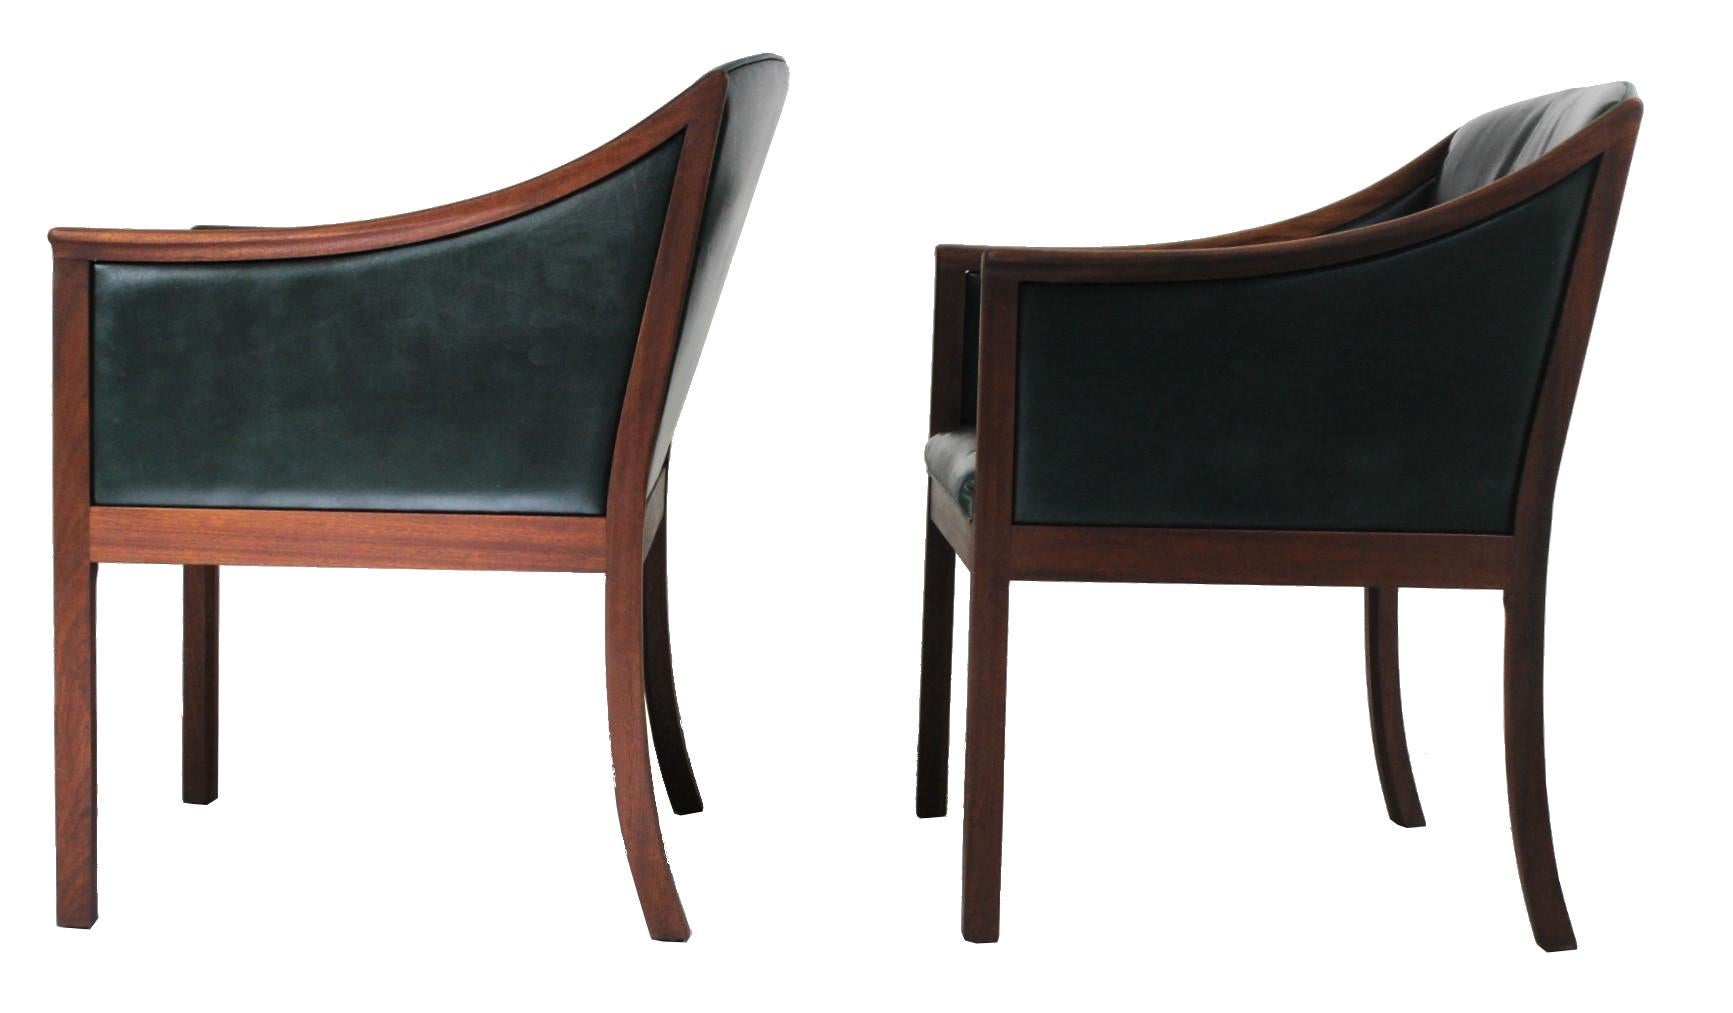 1950s Pair of Lounge Chairs, Ole Wanscher for PJ Møbler, Denmark (Skandinavische Moderne)